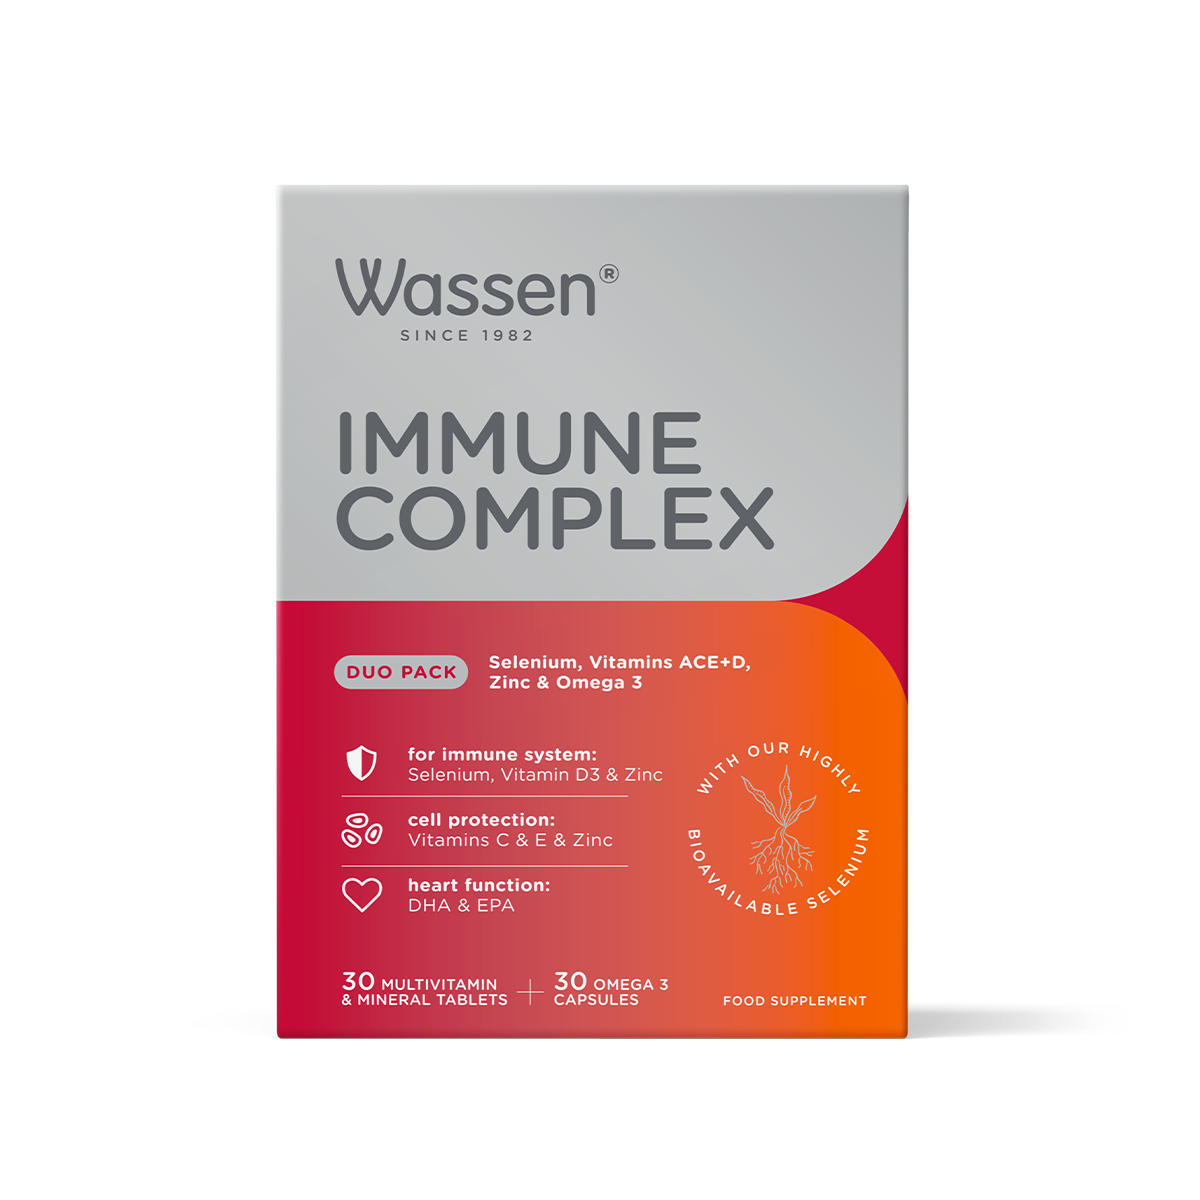 Immune Complex